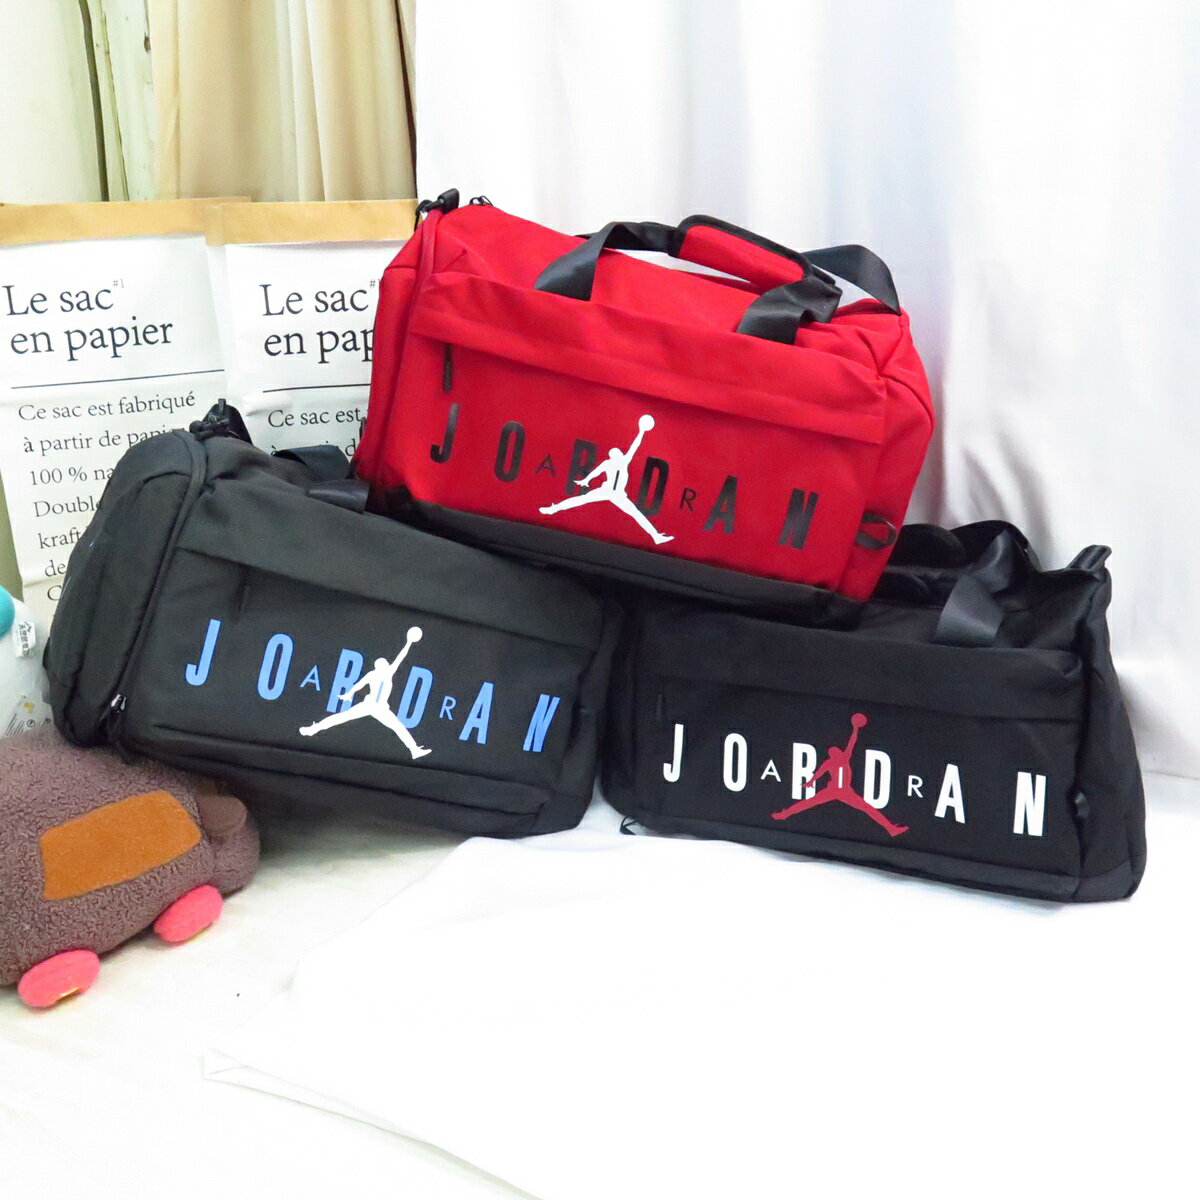 JORDAN 喬丹 行李包 手提包 運動 外出 旅行 獨立鞋袋 JD2243027GS- (S)【iSport愛運動】